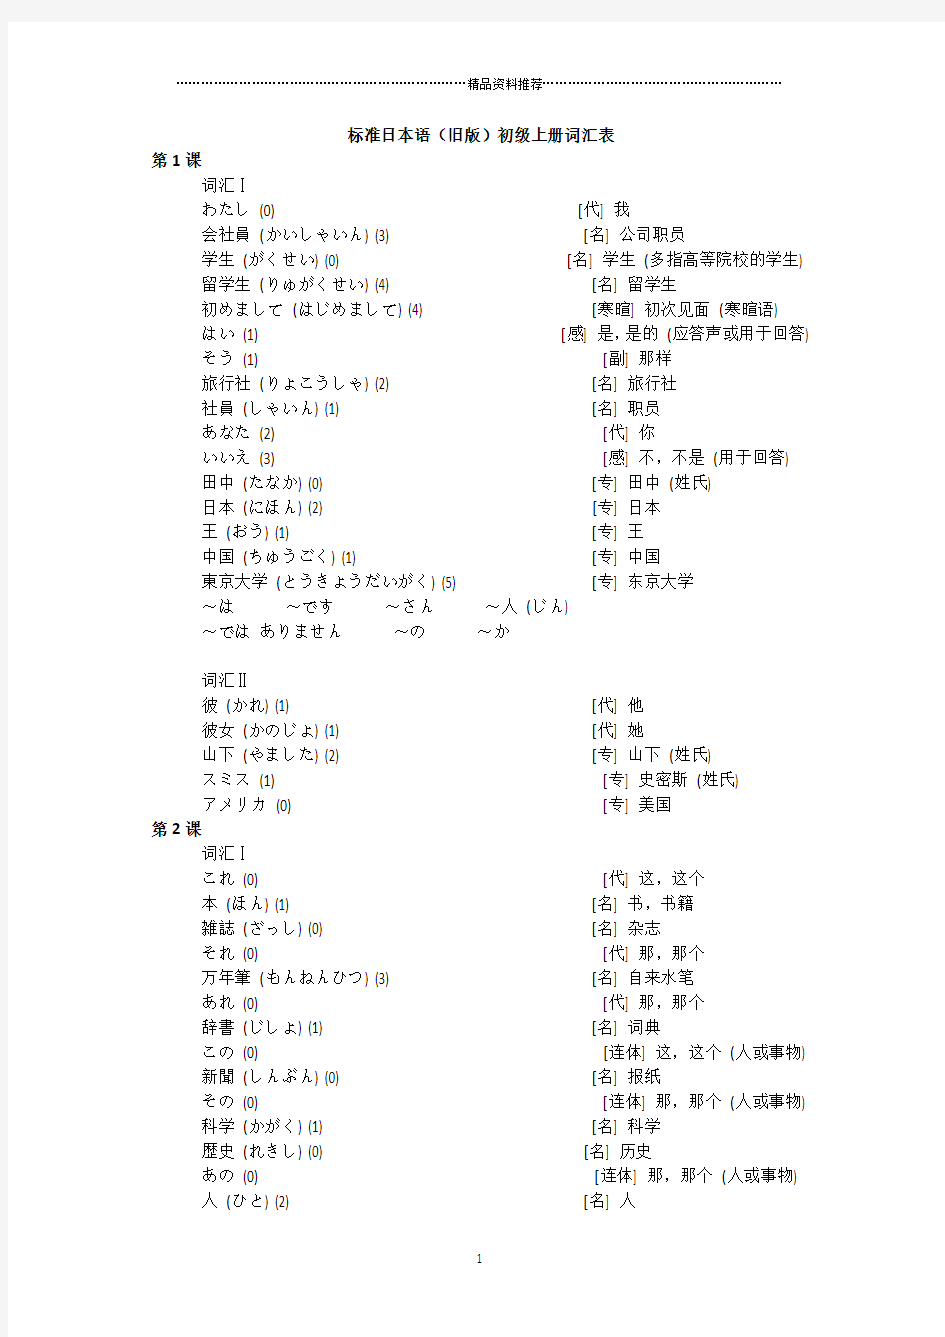 标准日本语(旧版)初级上册词汇